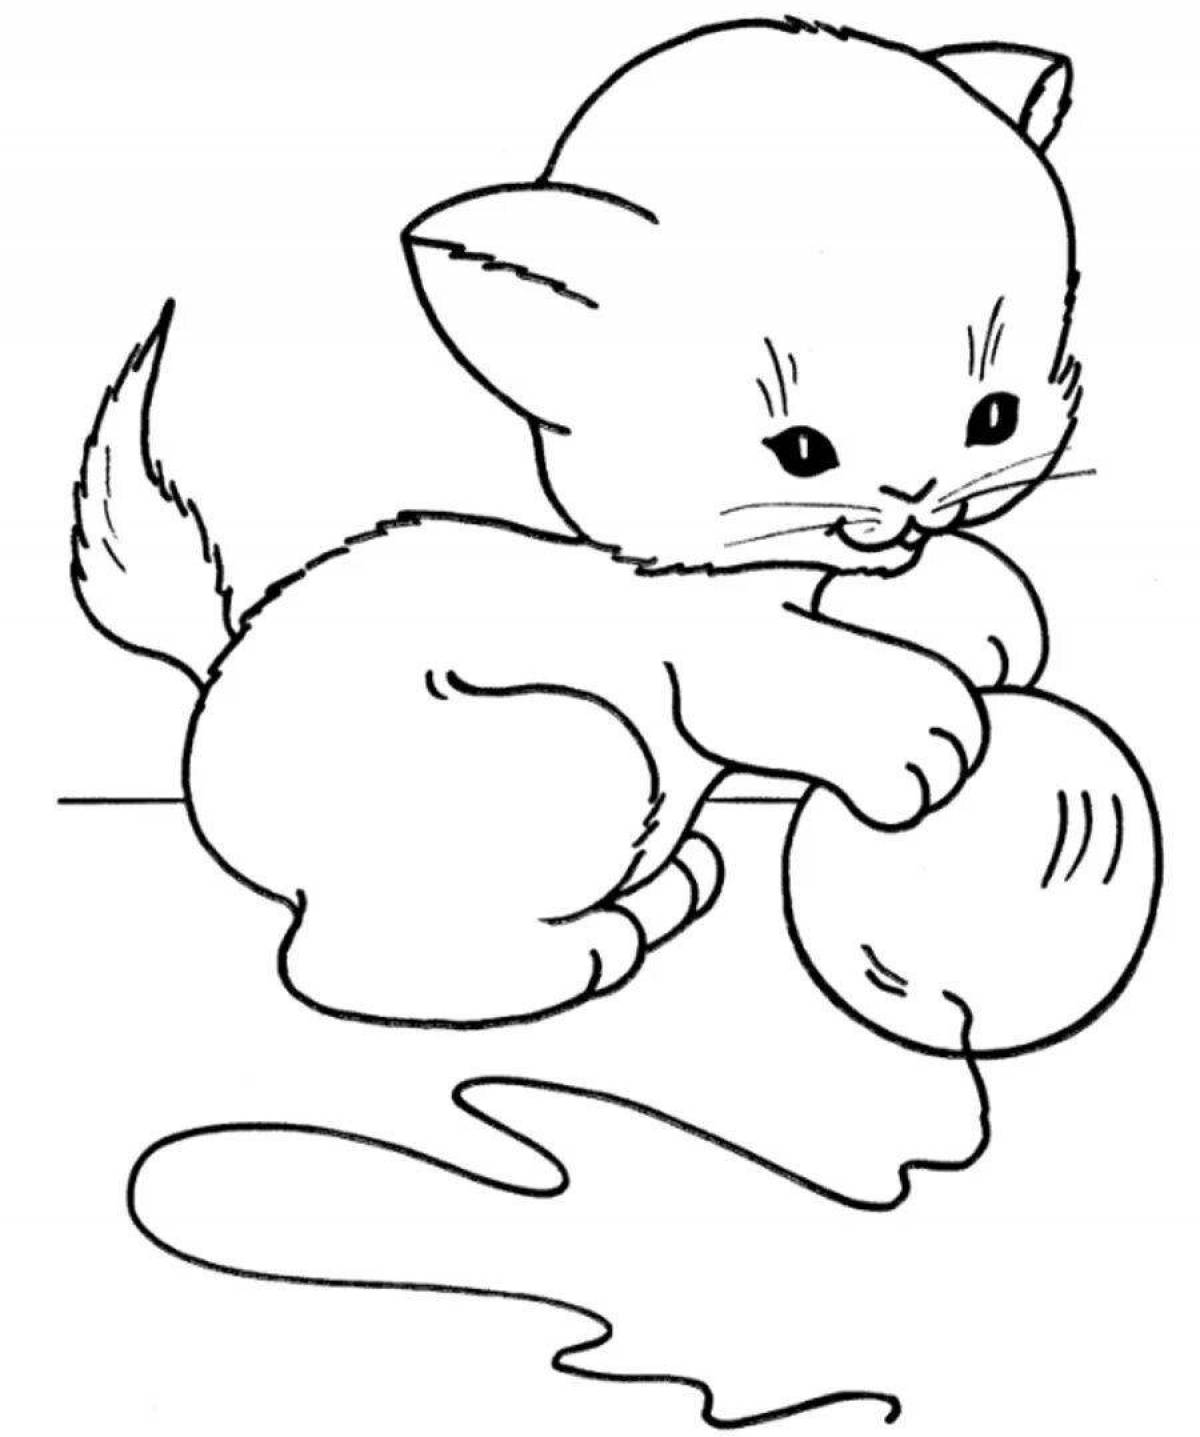 Яркая раскраска кошка для детей 2-3 лет